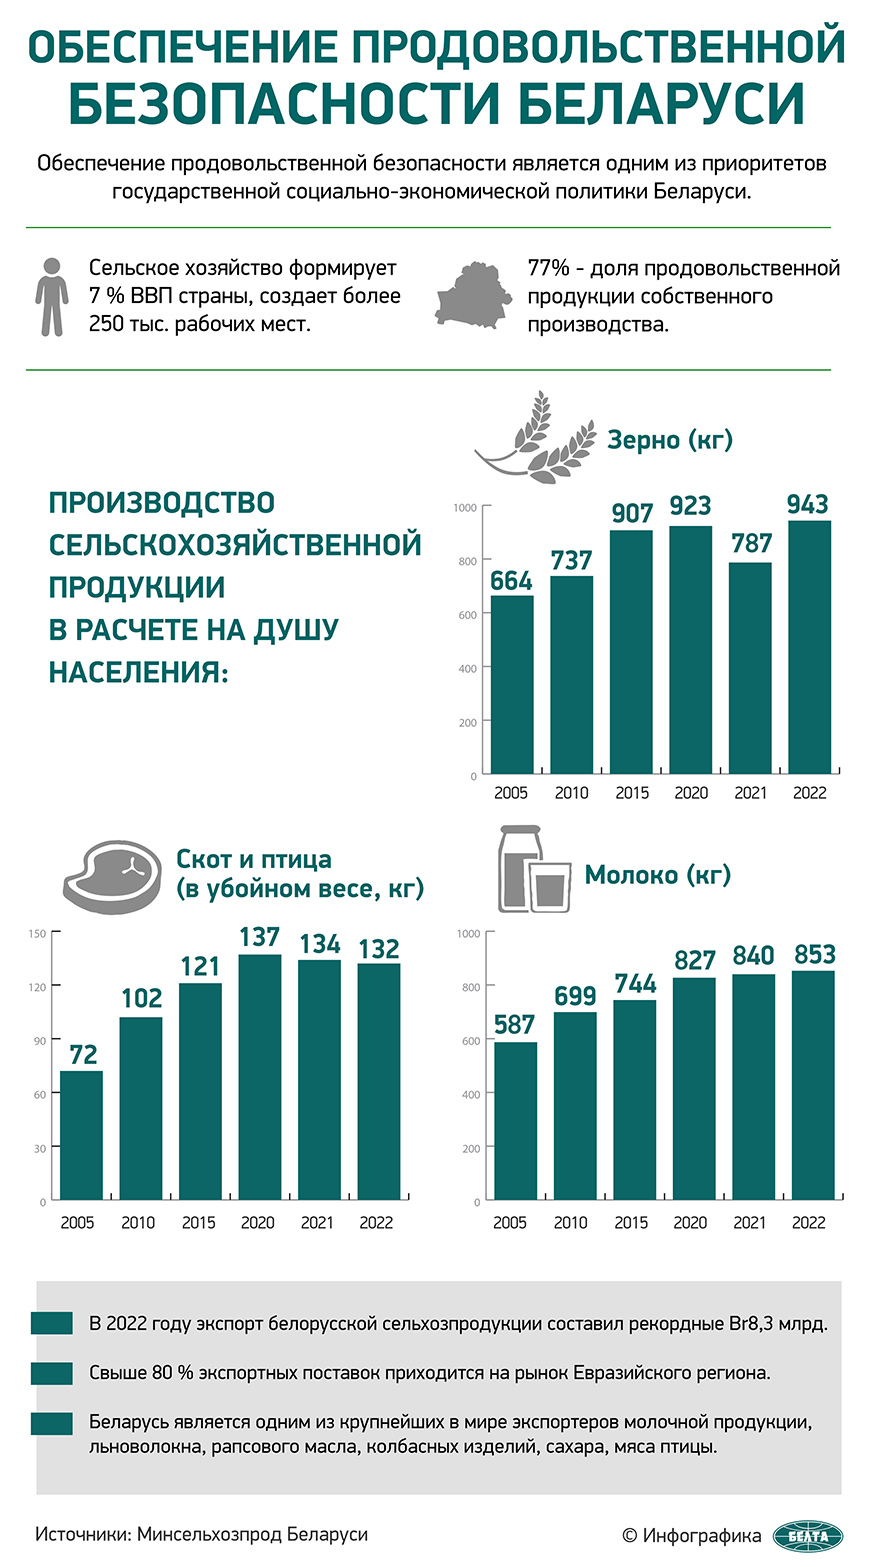 Обеспечение продовольственной безопасности Беларуси